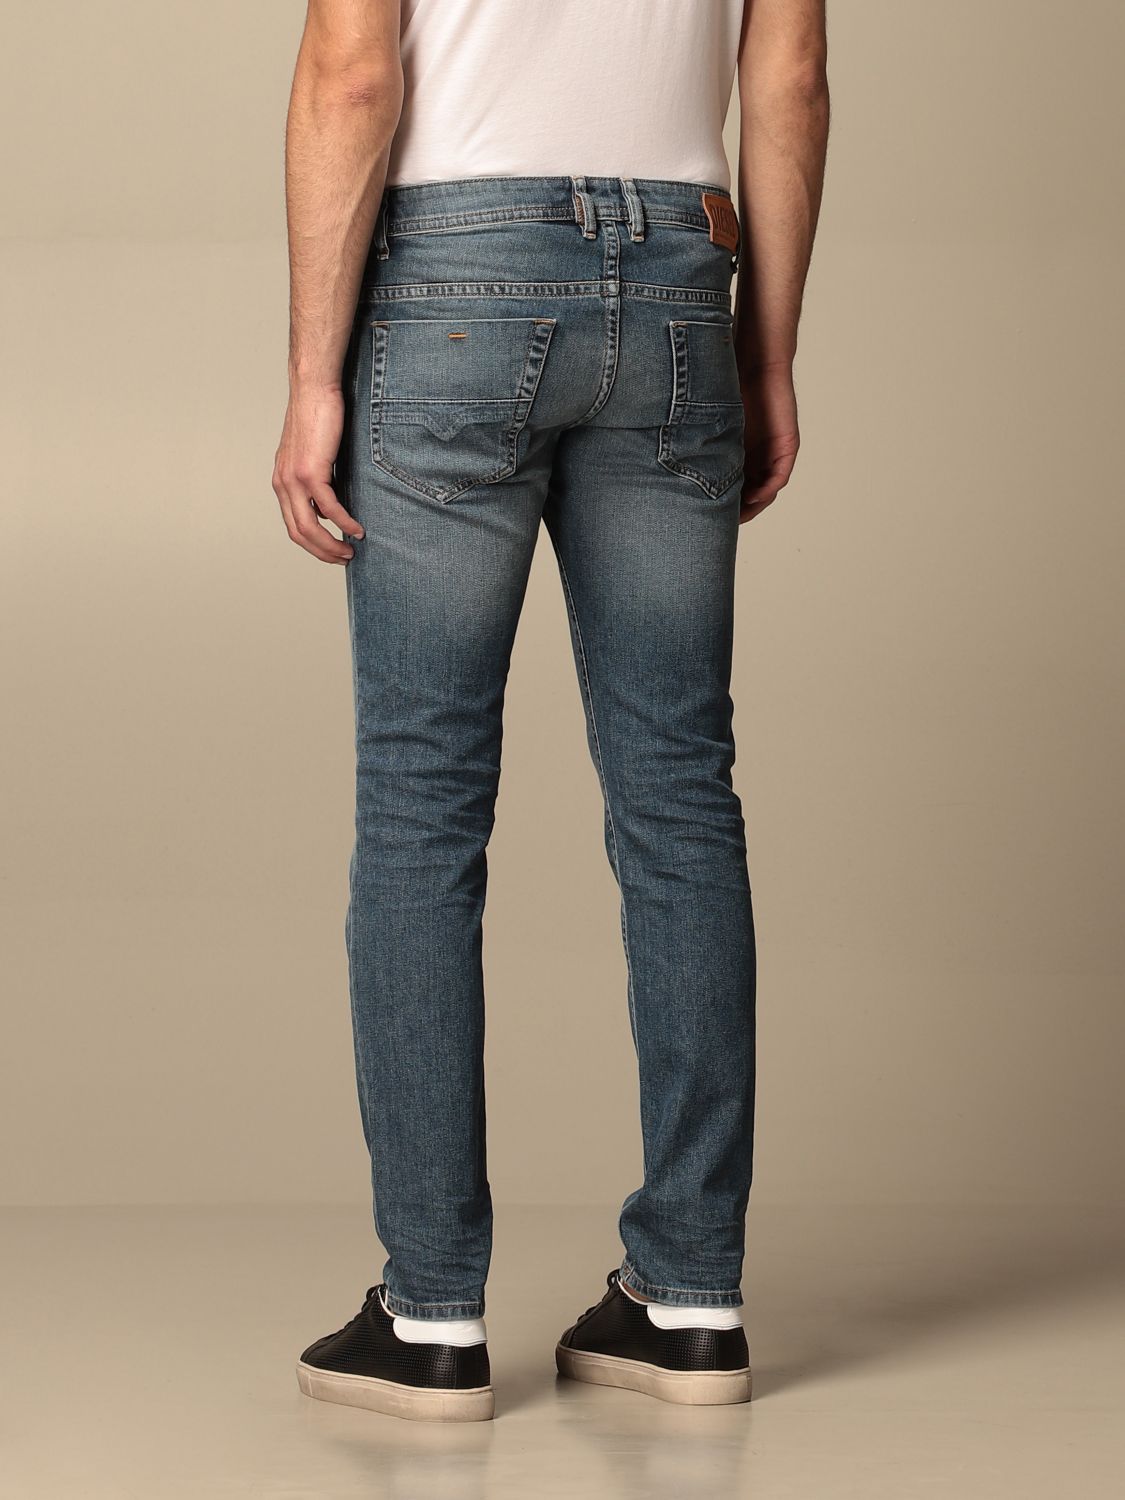 DIESEL: 5-pocket jeans | Jeans Diesel Men Denim | Jeans Diesel 00SB6C ...